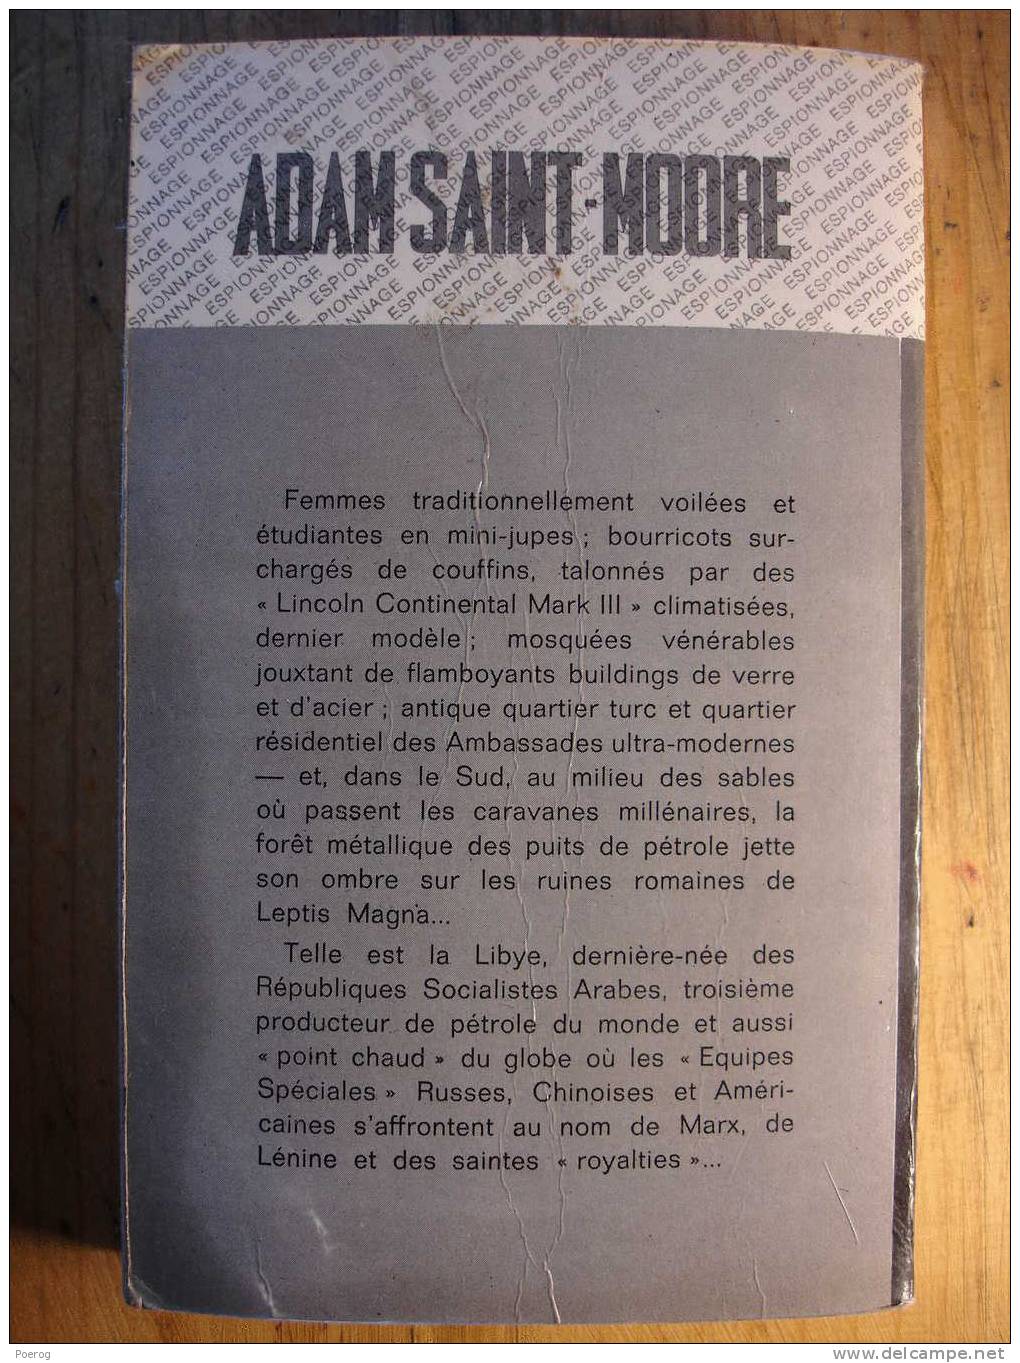 COUP DE CHALEUR POUR FACE D´ ANGE - ADAM SAINT MOORE - FLEUVE NOIR ESPIONNAGE - M. GOURDON - Fleuve Noir